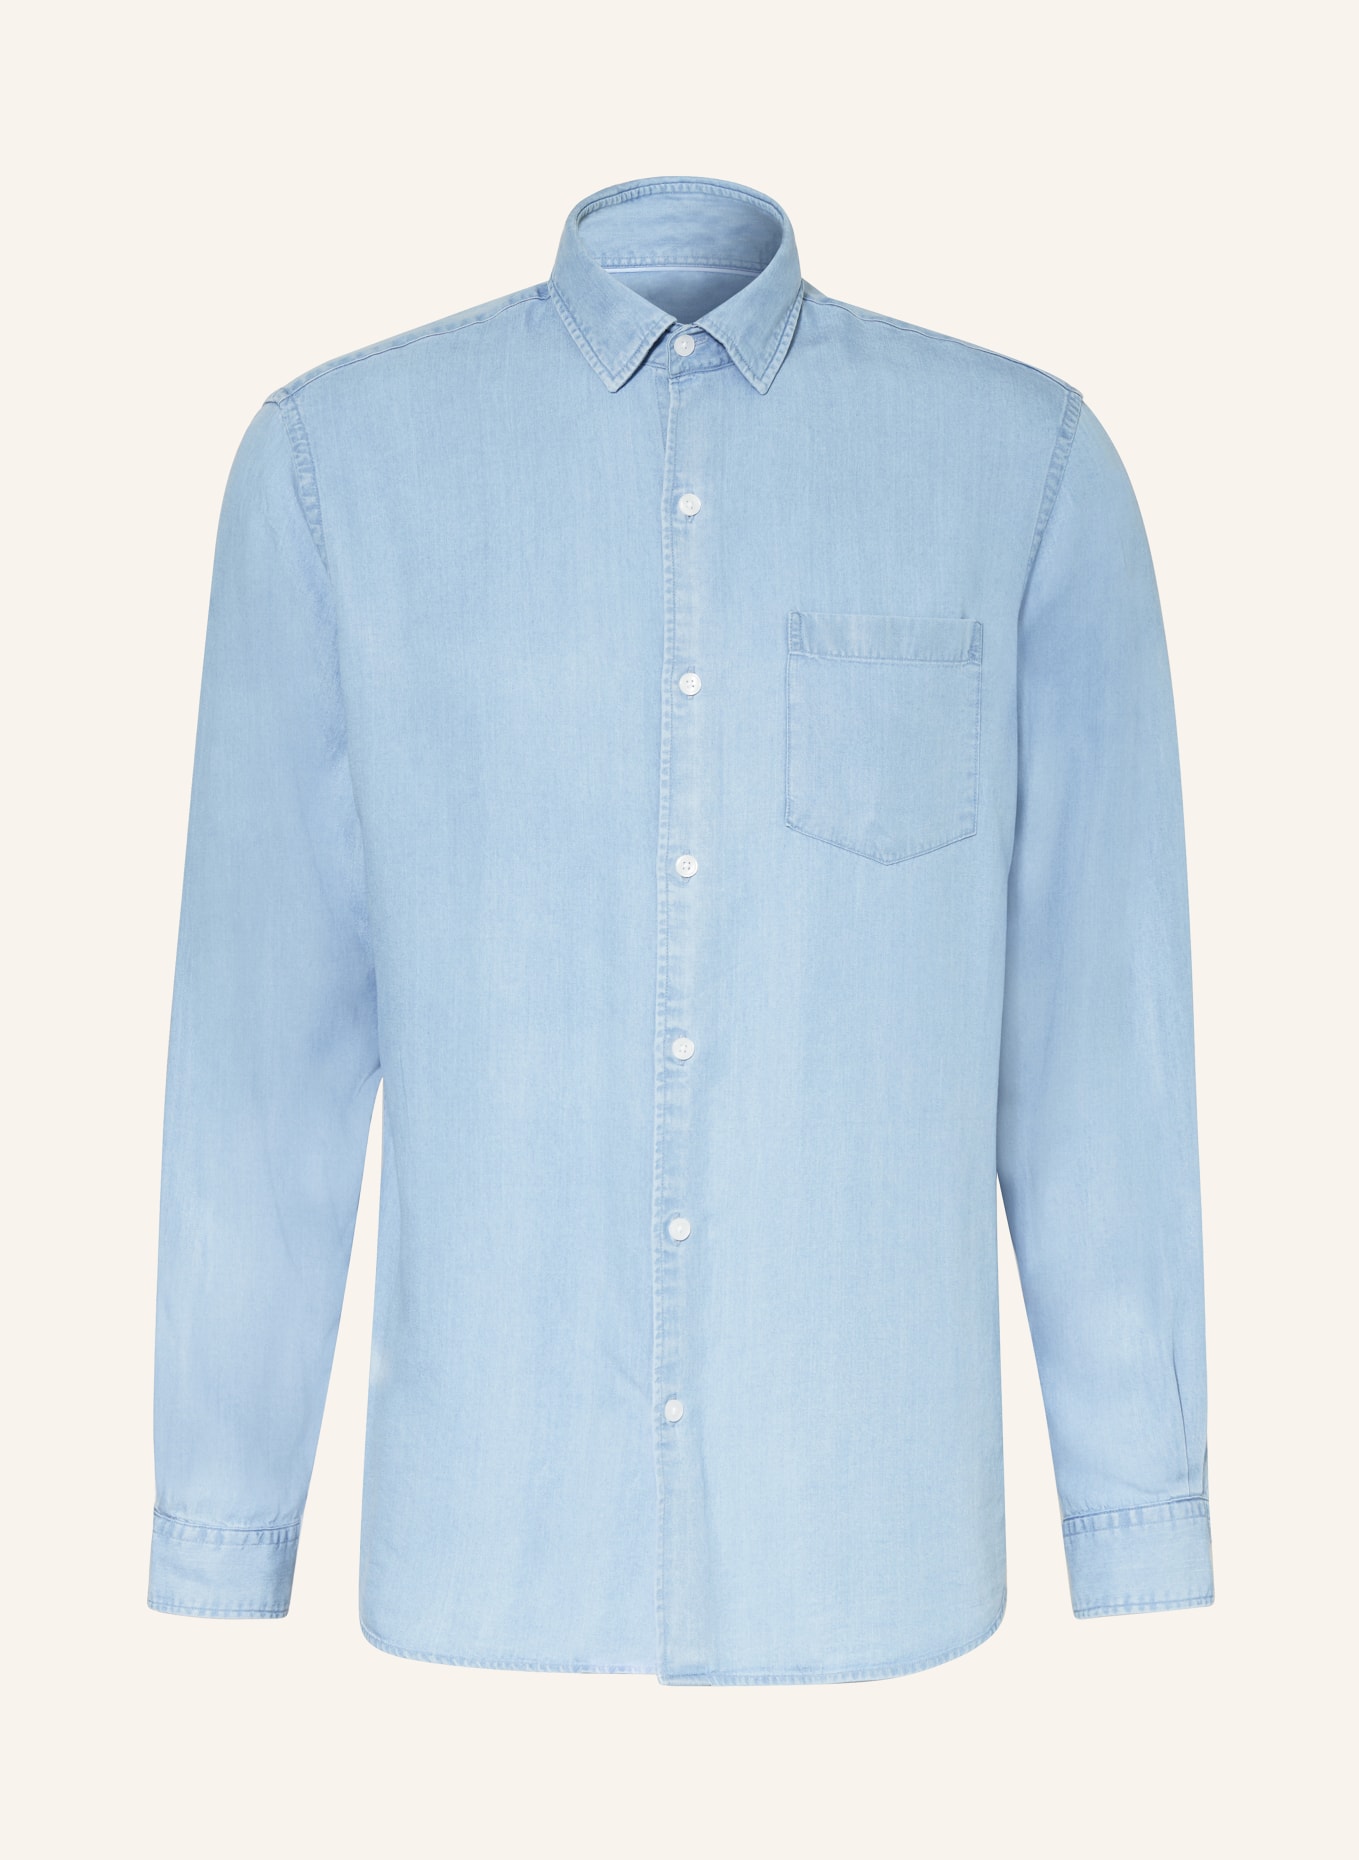 PAUL Shirt comfort fit, Color: 78705 light denim (Image 1)